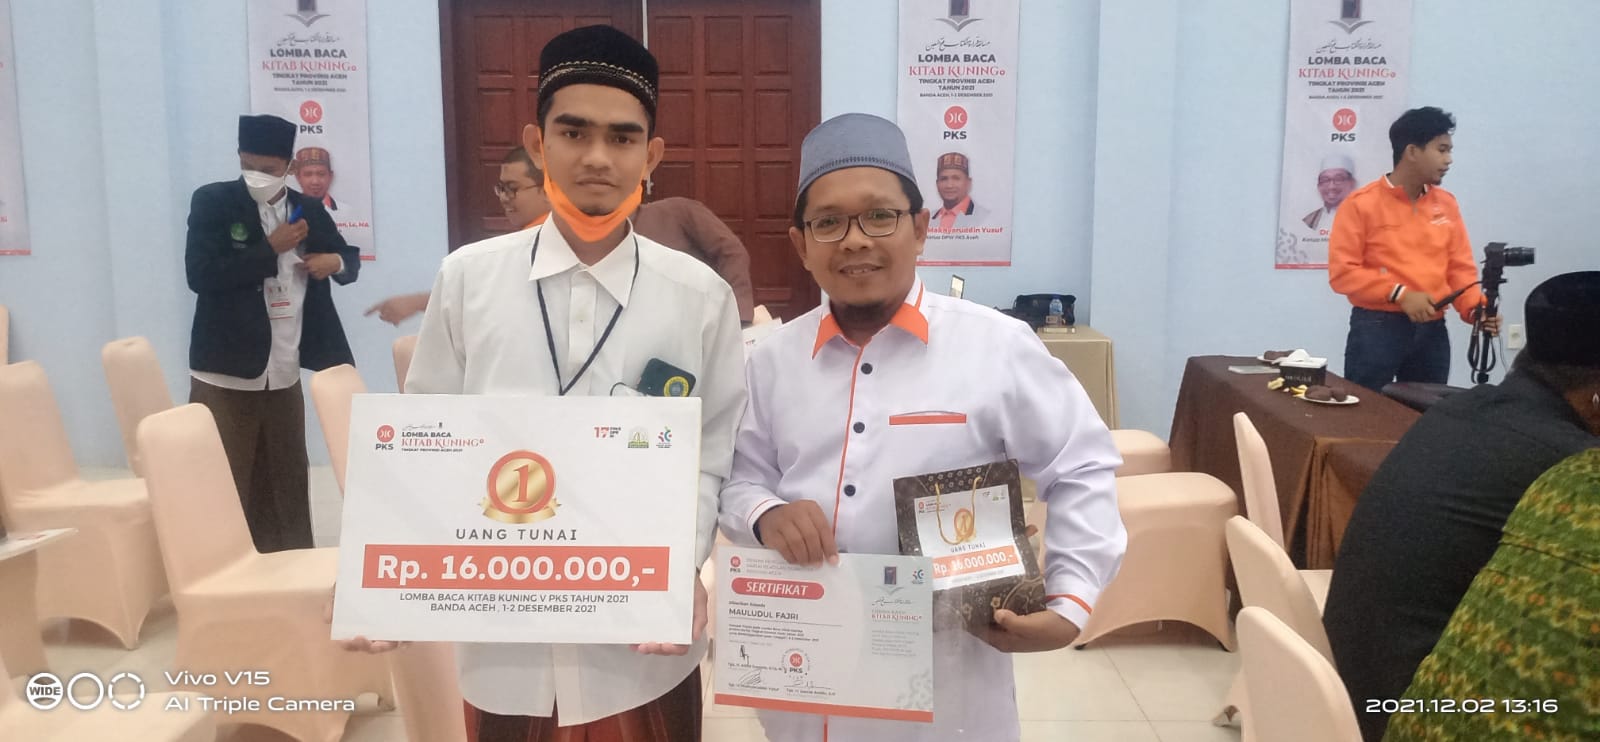 Membanggakan! Maulidul Fajri Santri Asal Bireuen Raih Juara 1 Lomba Baca Kitab Kuning PKS Aceh